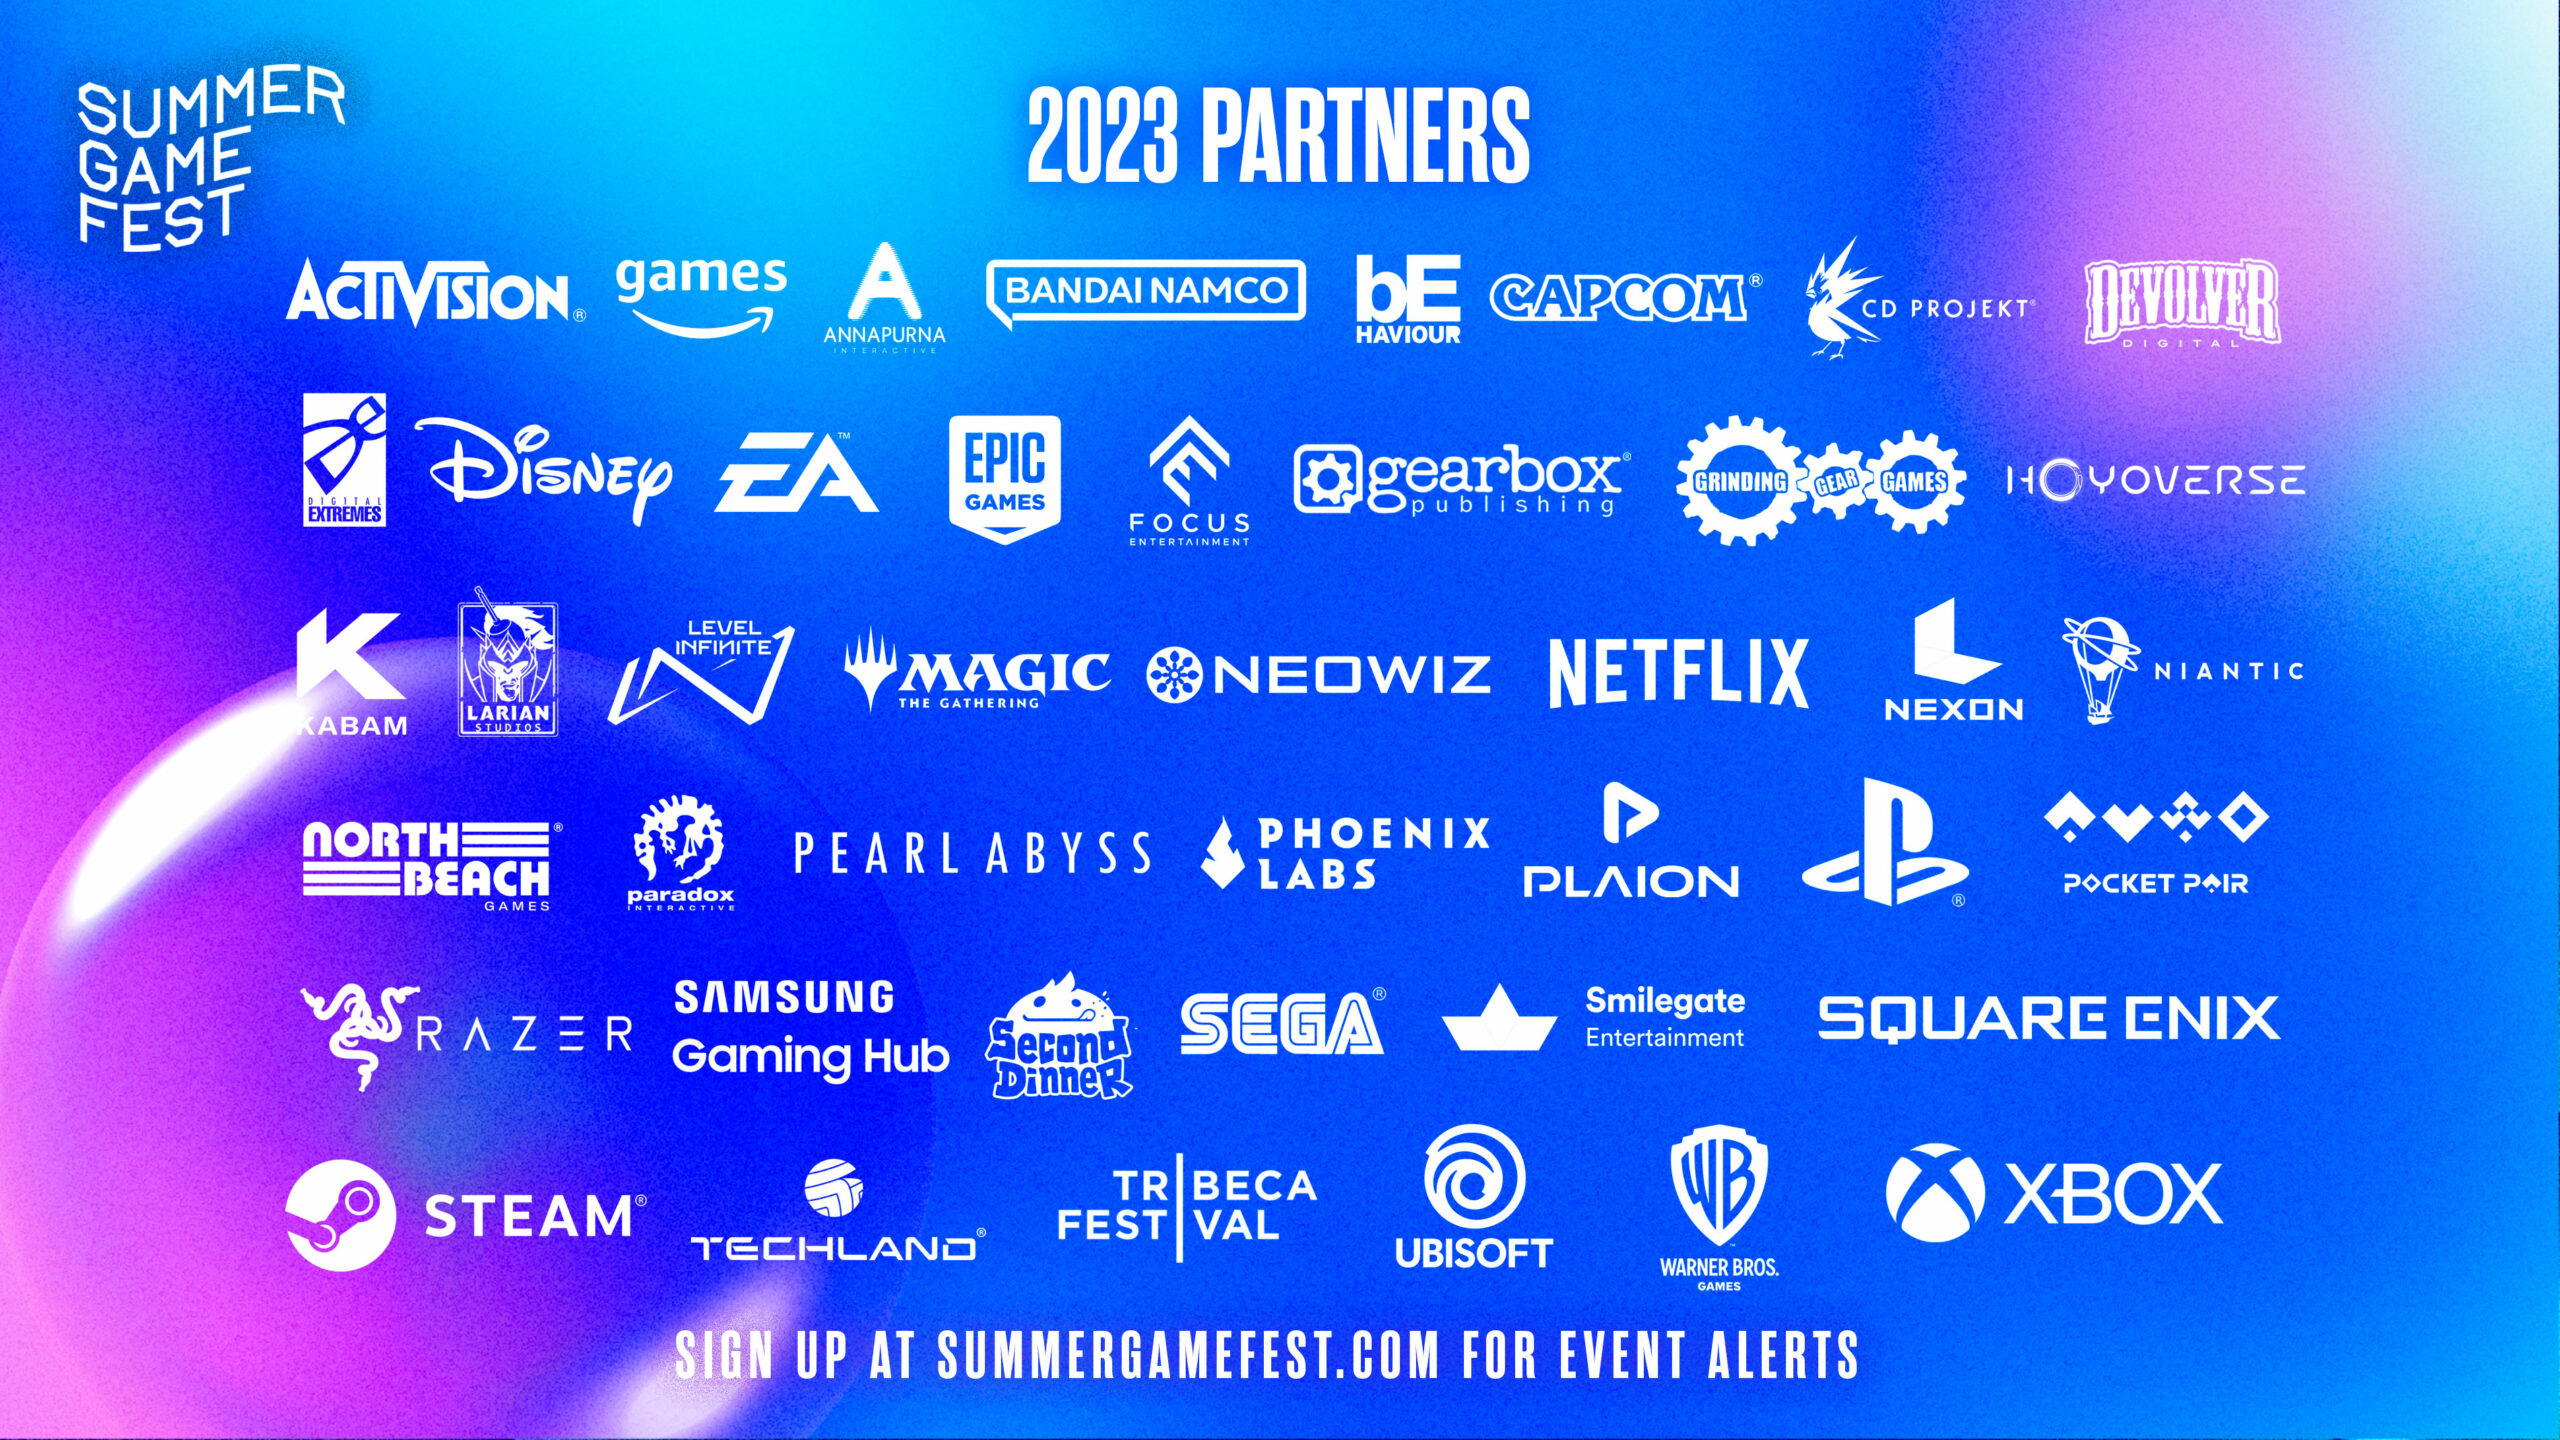 #Summer Game Fest wartet mit über 40 Partnern auf – diese Publisher sind mit dabei